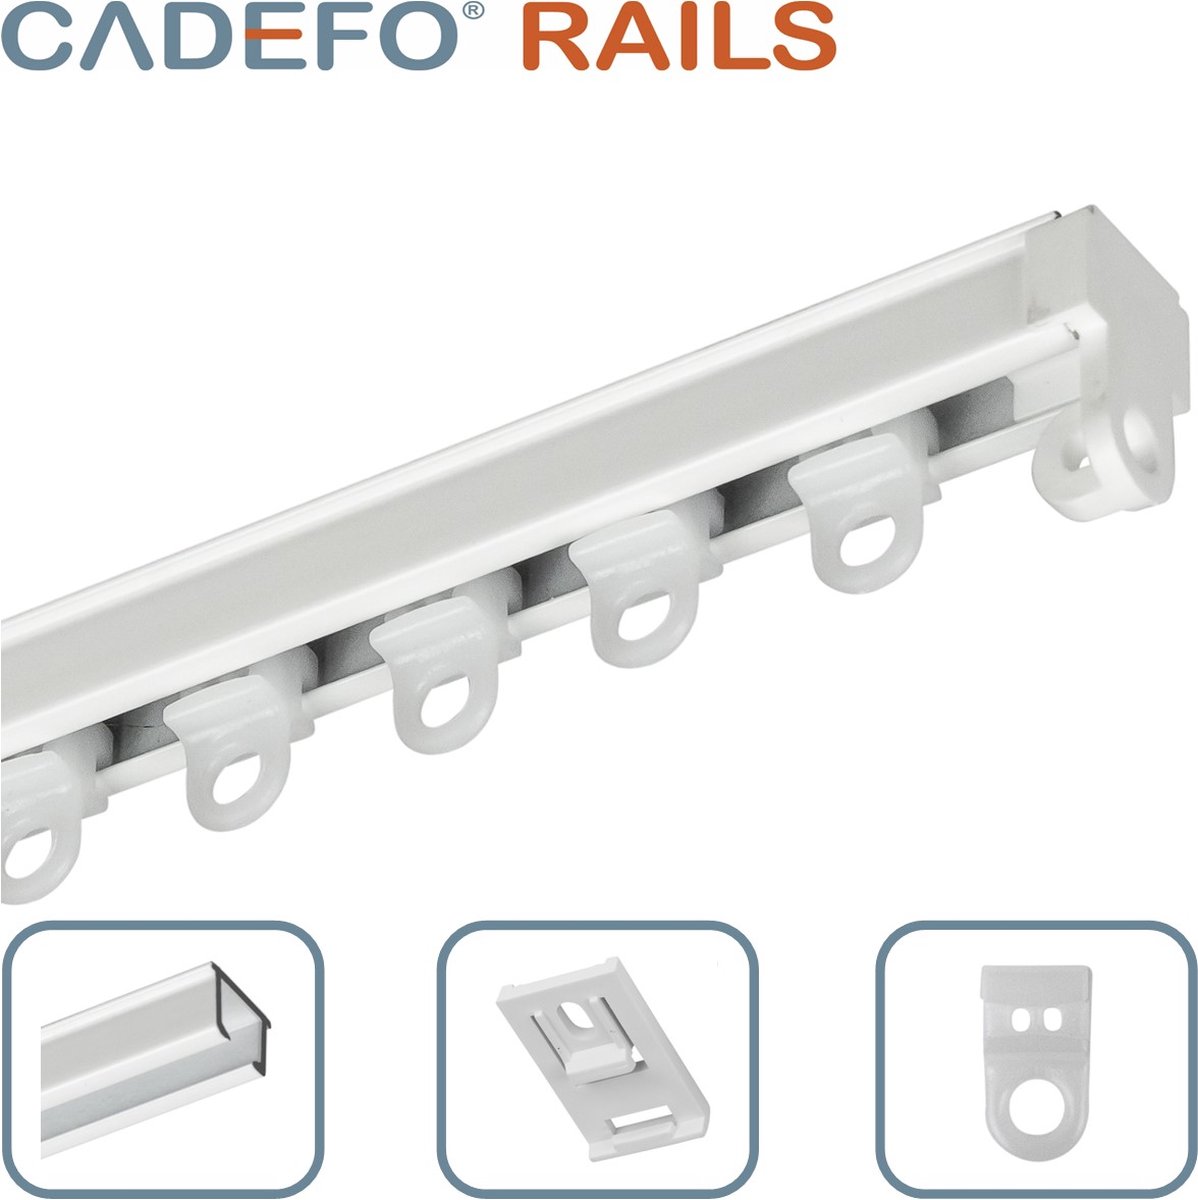 CADEFO RAILS (501 - 550 cm) Gordijnrails - Compleet op maat! - UIT 1 STUK - Leverbaar tot 6 meter - Plafondbevestiging - Lengte 507 cm